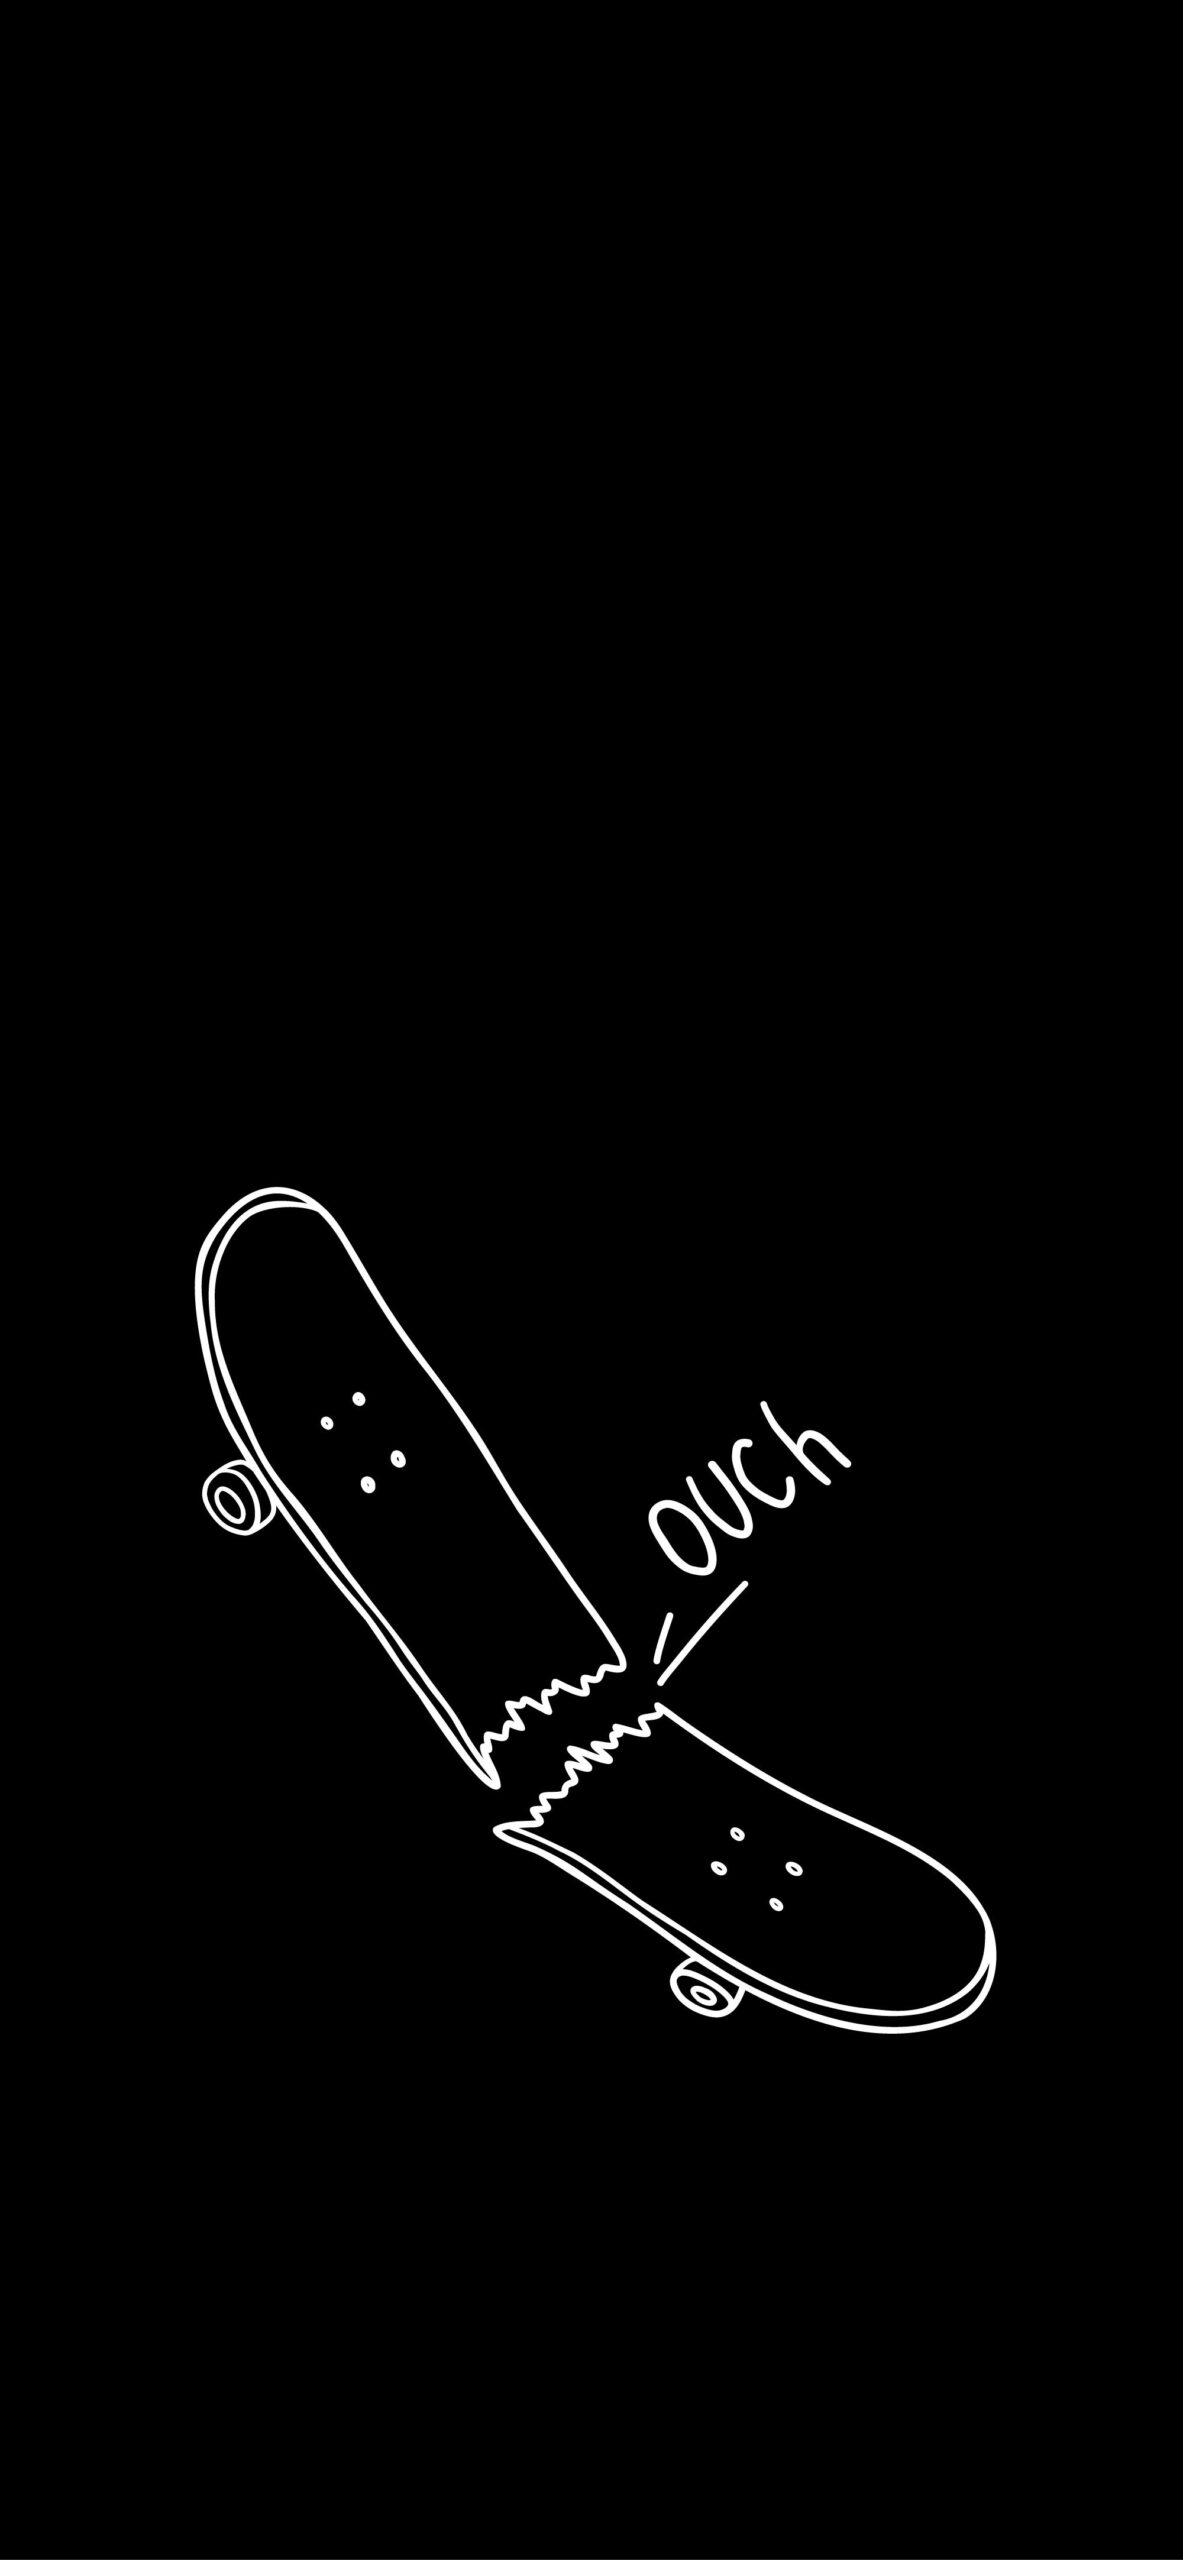 Broken Skateboard Doodle Black Wallpaper Sk8 Cool